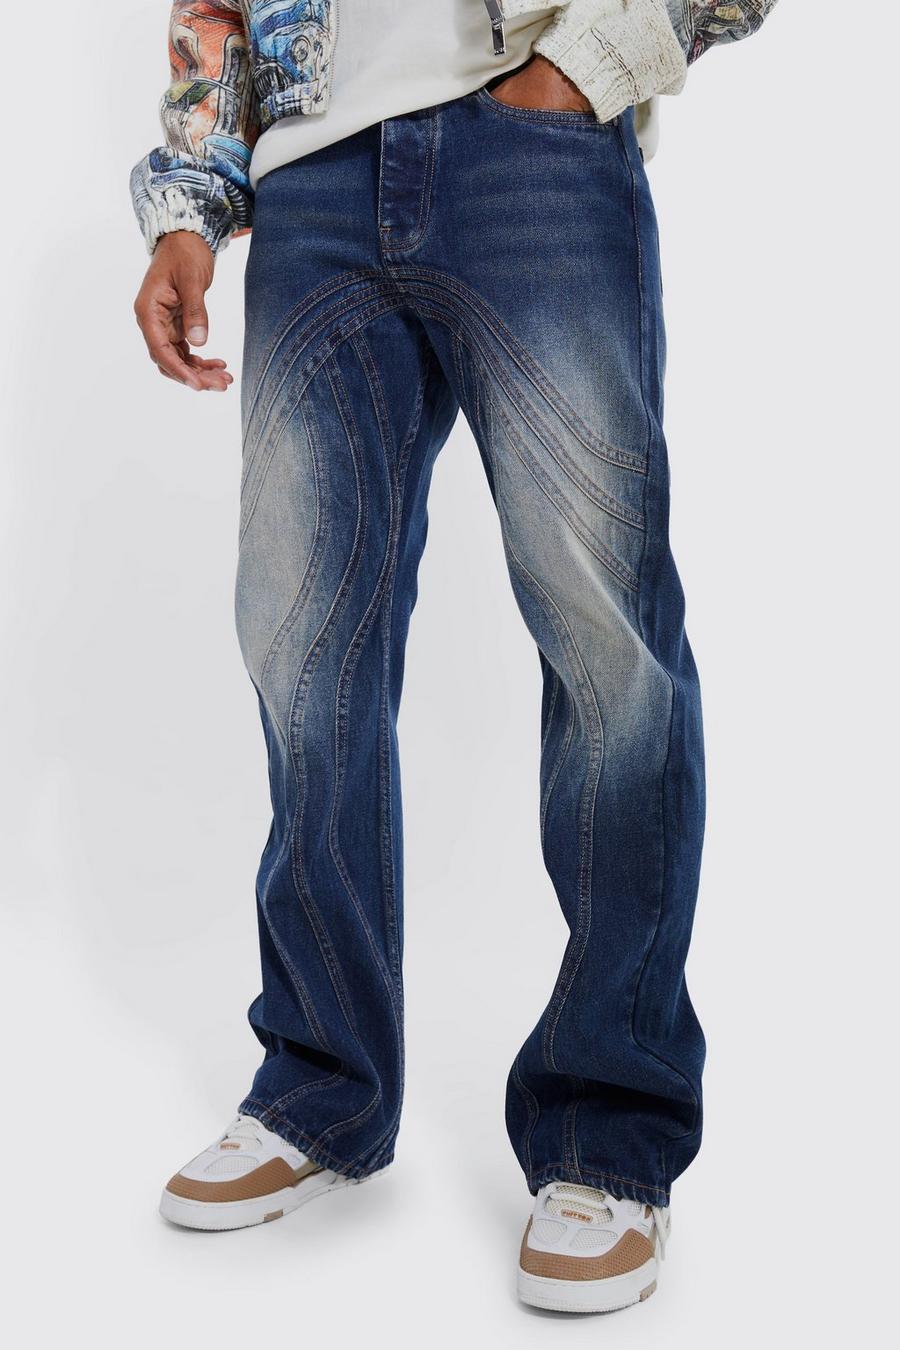 Jeans rilassati in denim rigido a zampa con pannelli colorati, Antique wash image number 1